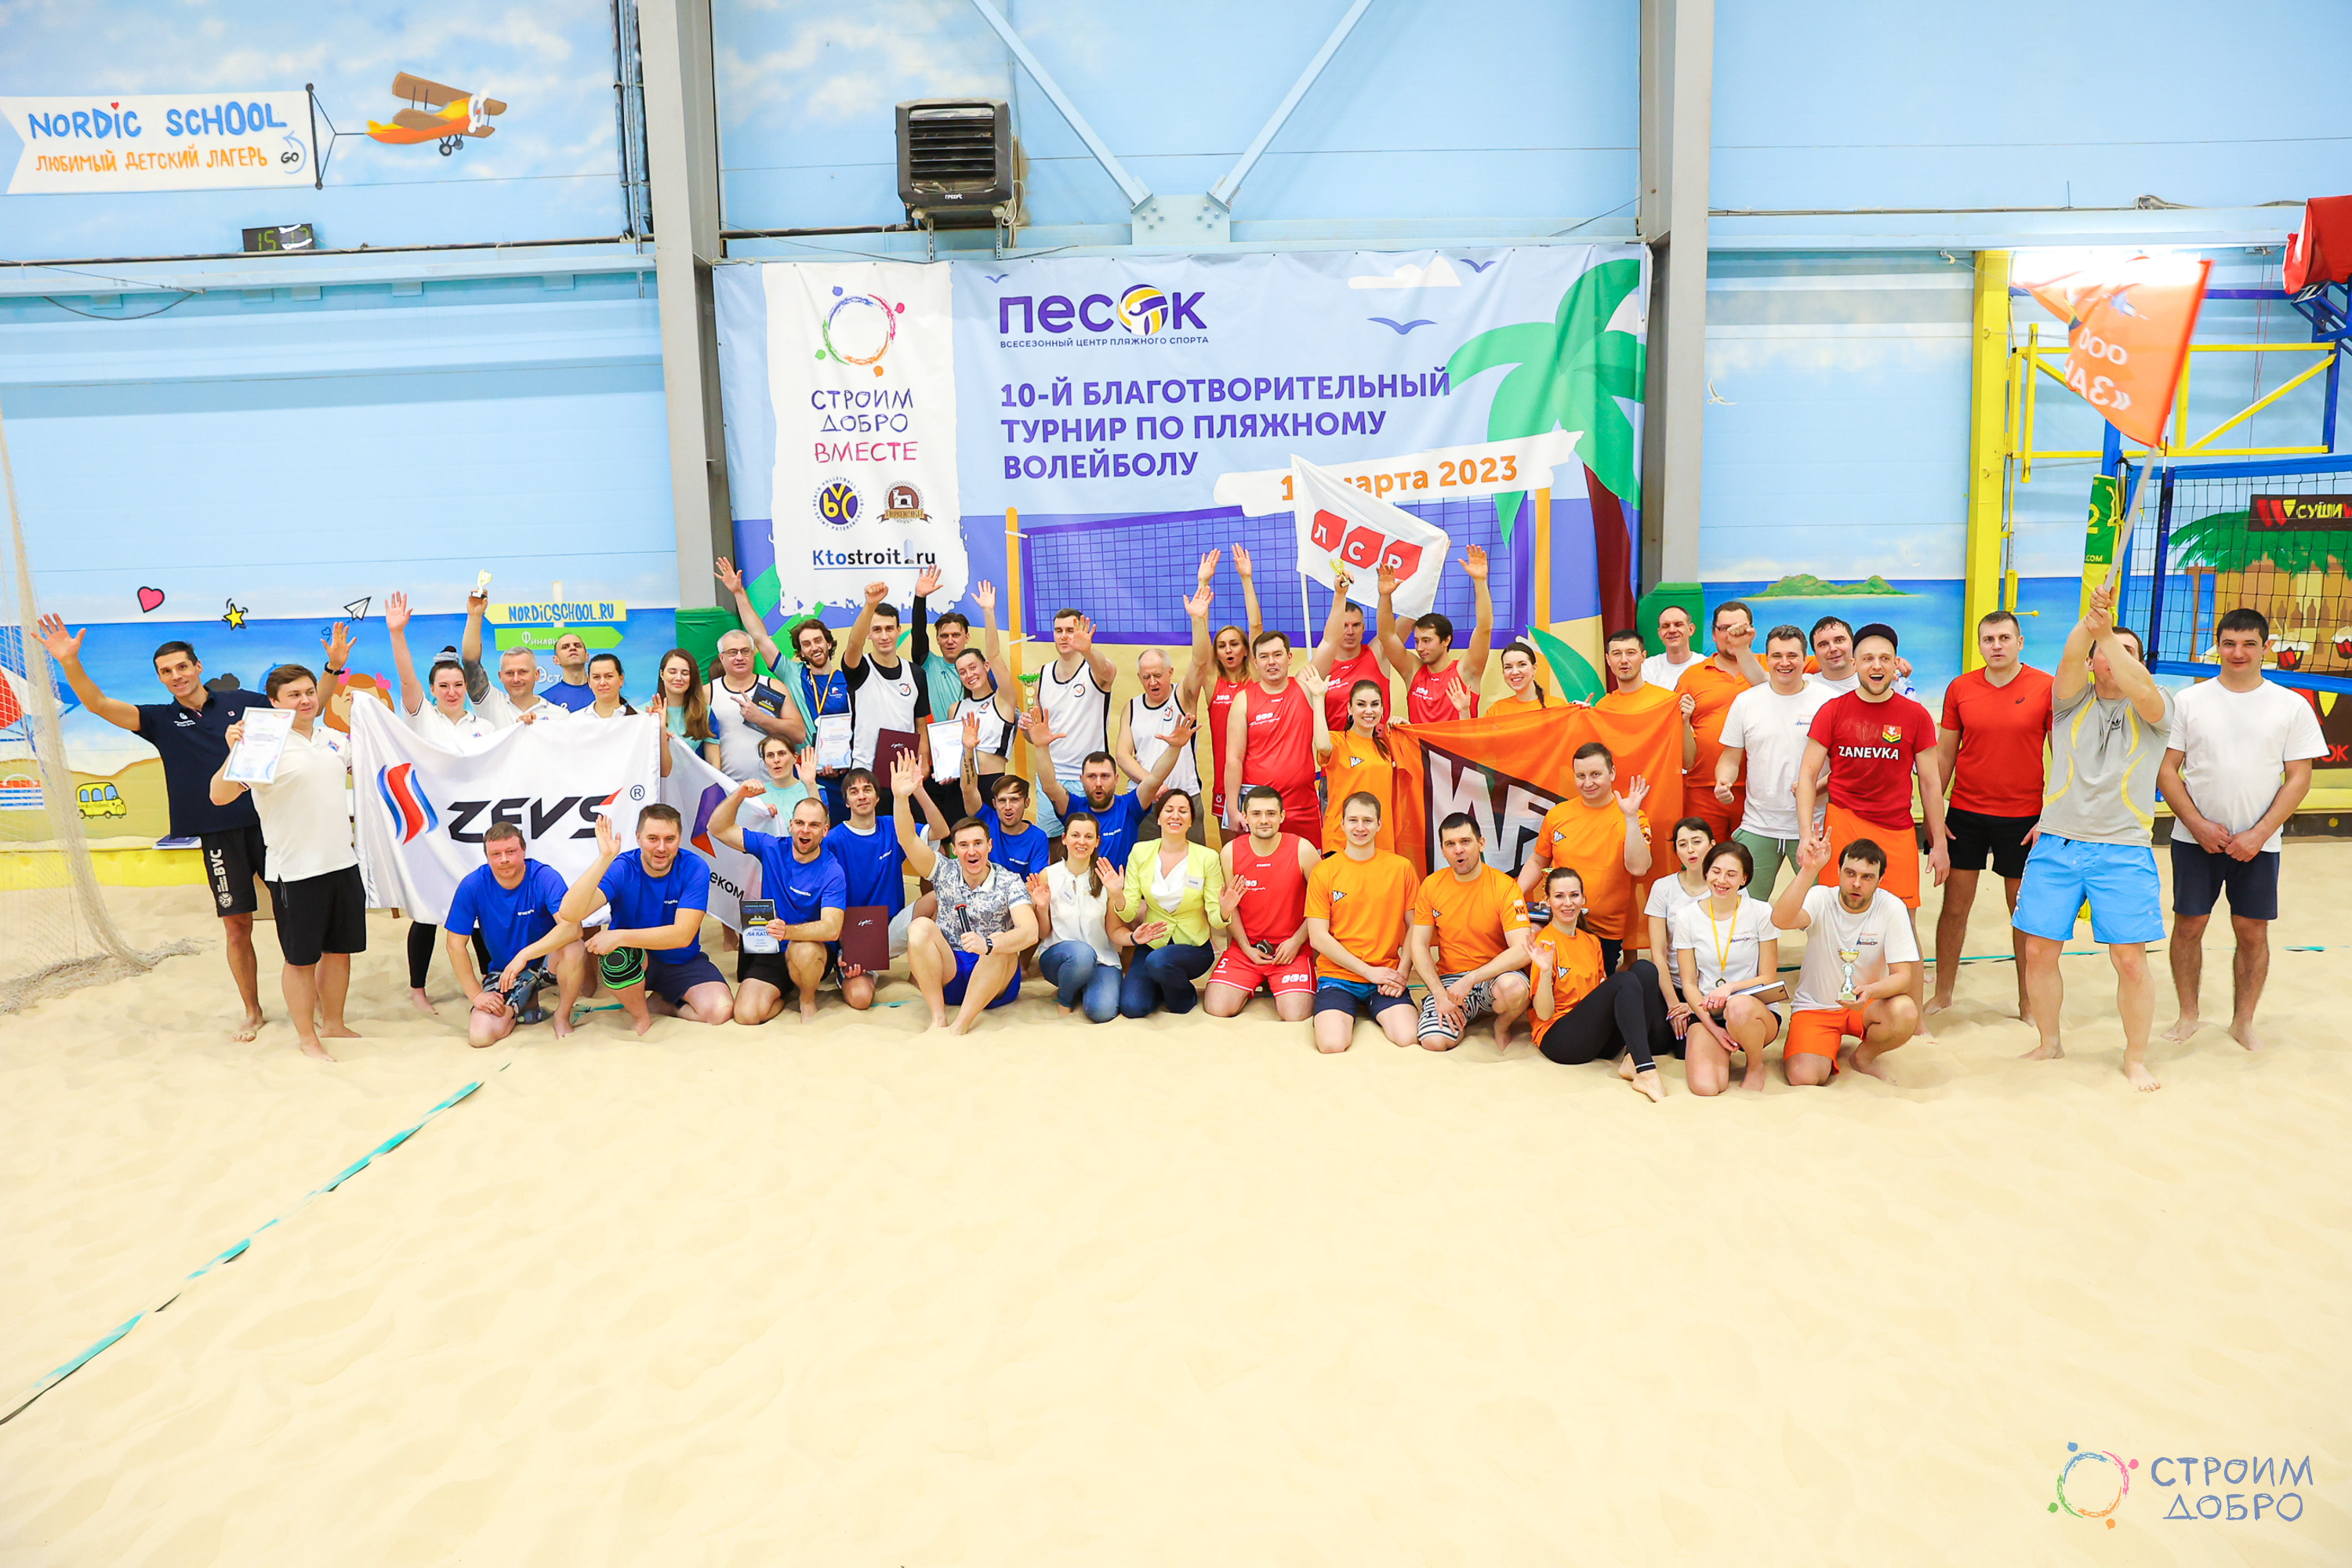 X Благотворительный турнир по пляжному волейболу состоялся!